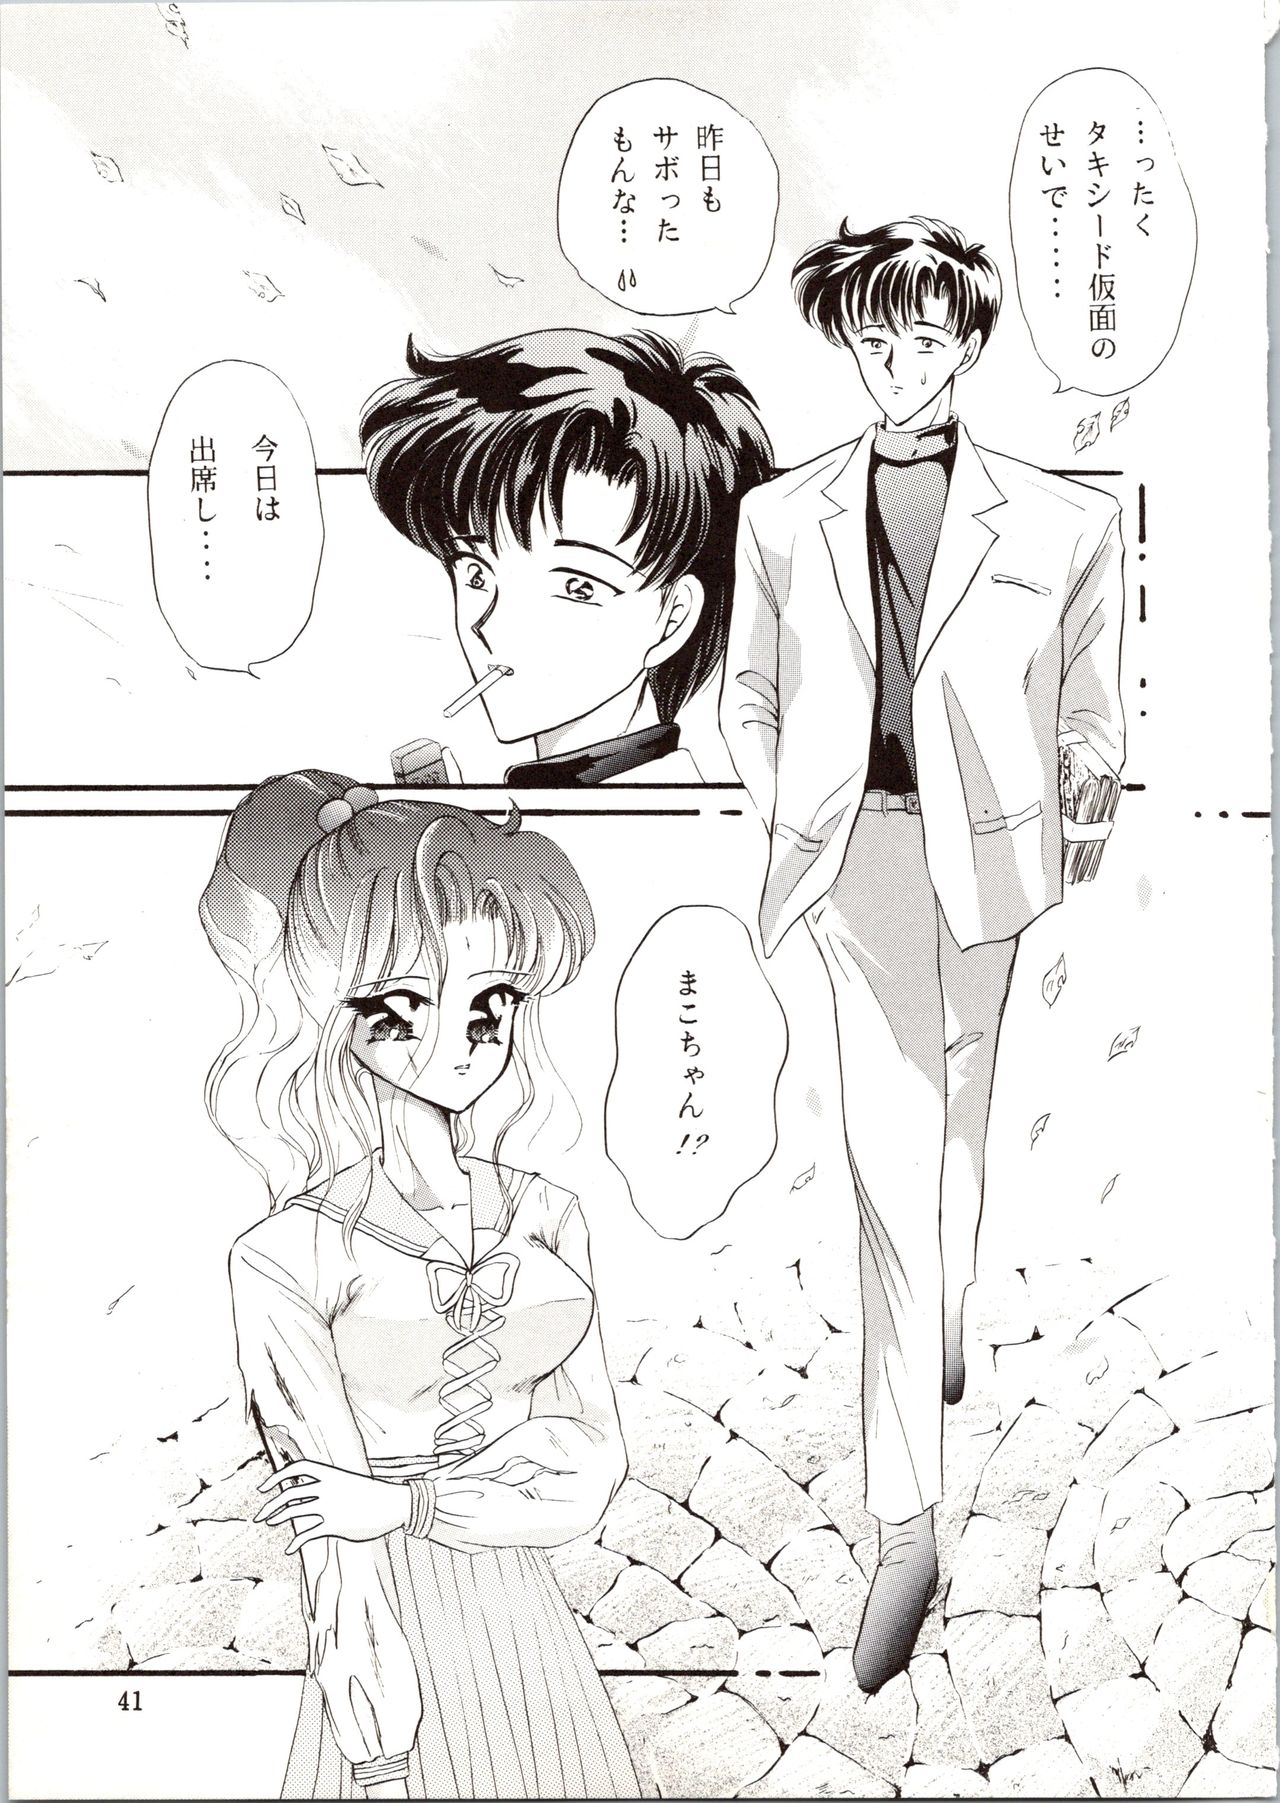 [P.P.P.P.C, TRAP (Matsuzaka Reia, Urano Mami)] Kangethu Hien Vol. 6 (Bishoujo Senshi Sailor Moon) page 41 full